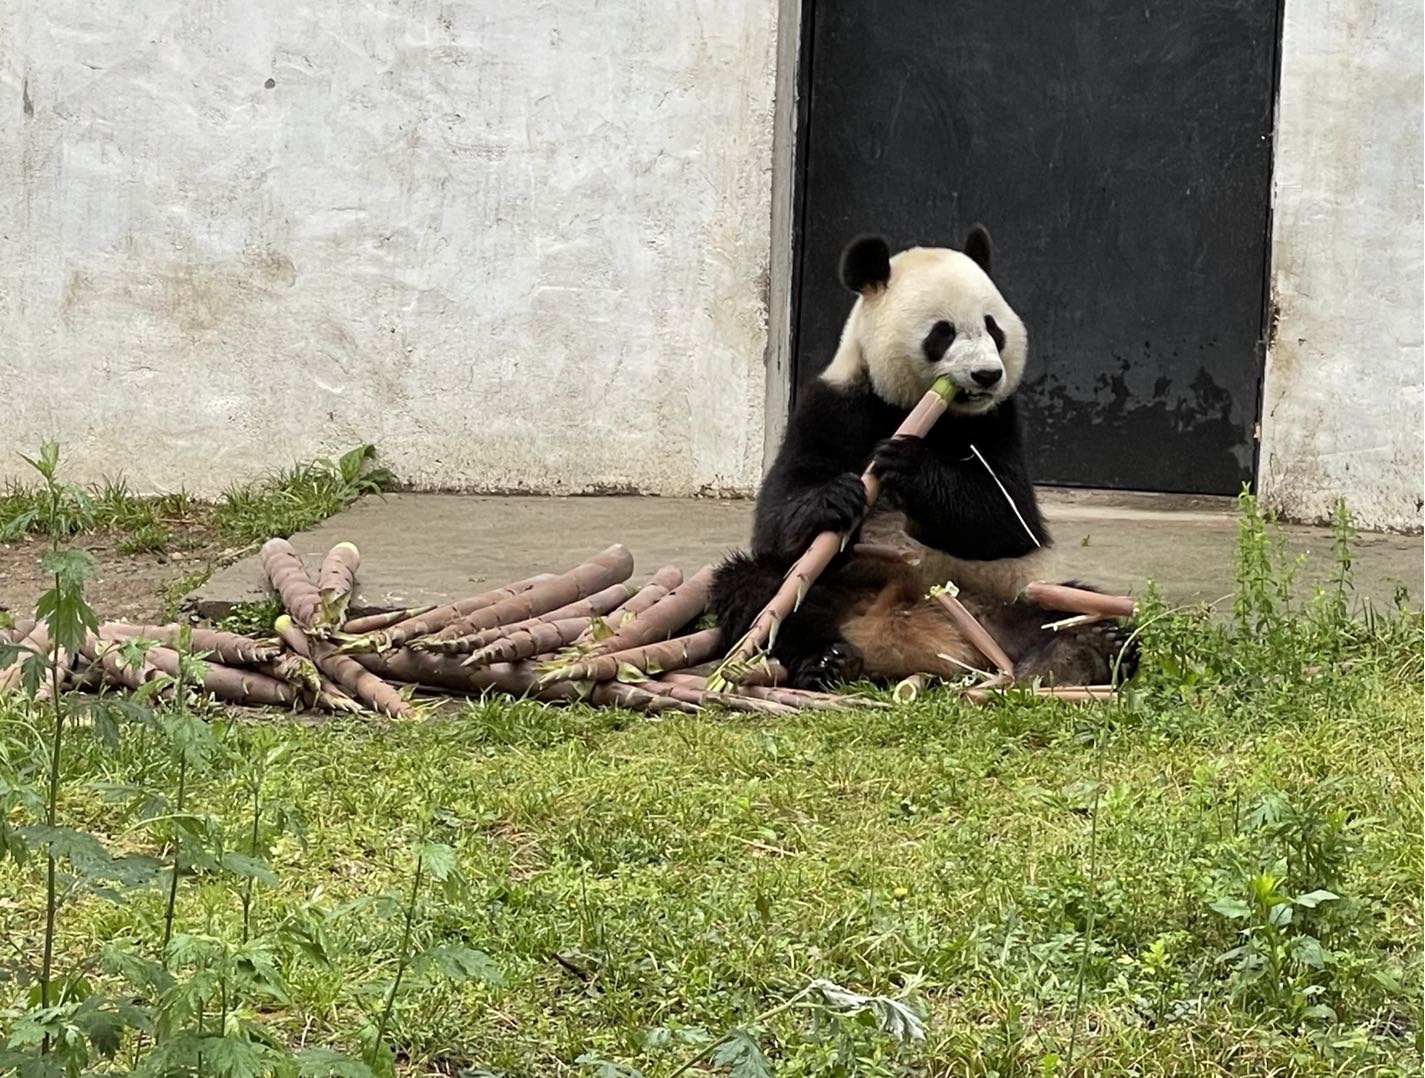 熊猫惬意地吃着新鲜竹笋  图/时代周报记者陈佳慧摄